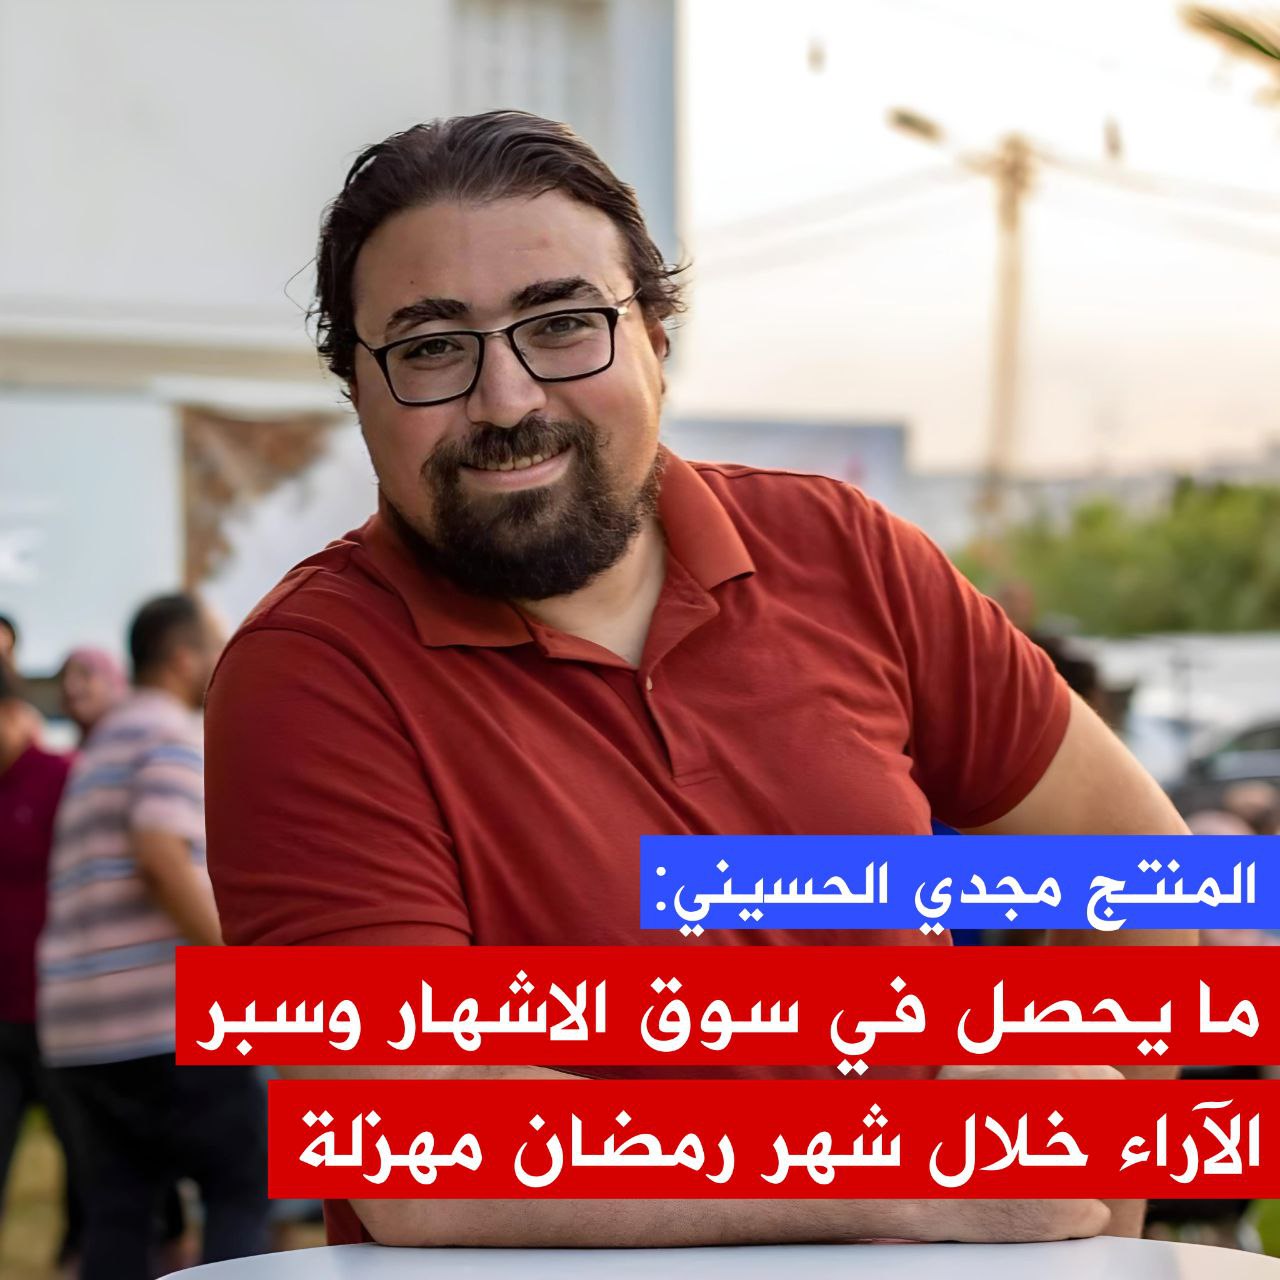 🔴المنتج مجدي الحسيني يتحدث عن سوق الإشهار وسبر الآراء حول المواد الإعلامية المعروضة خلال شهر رمضان